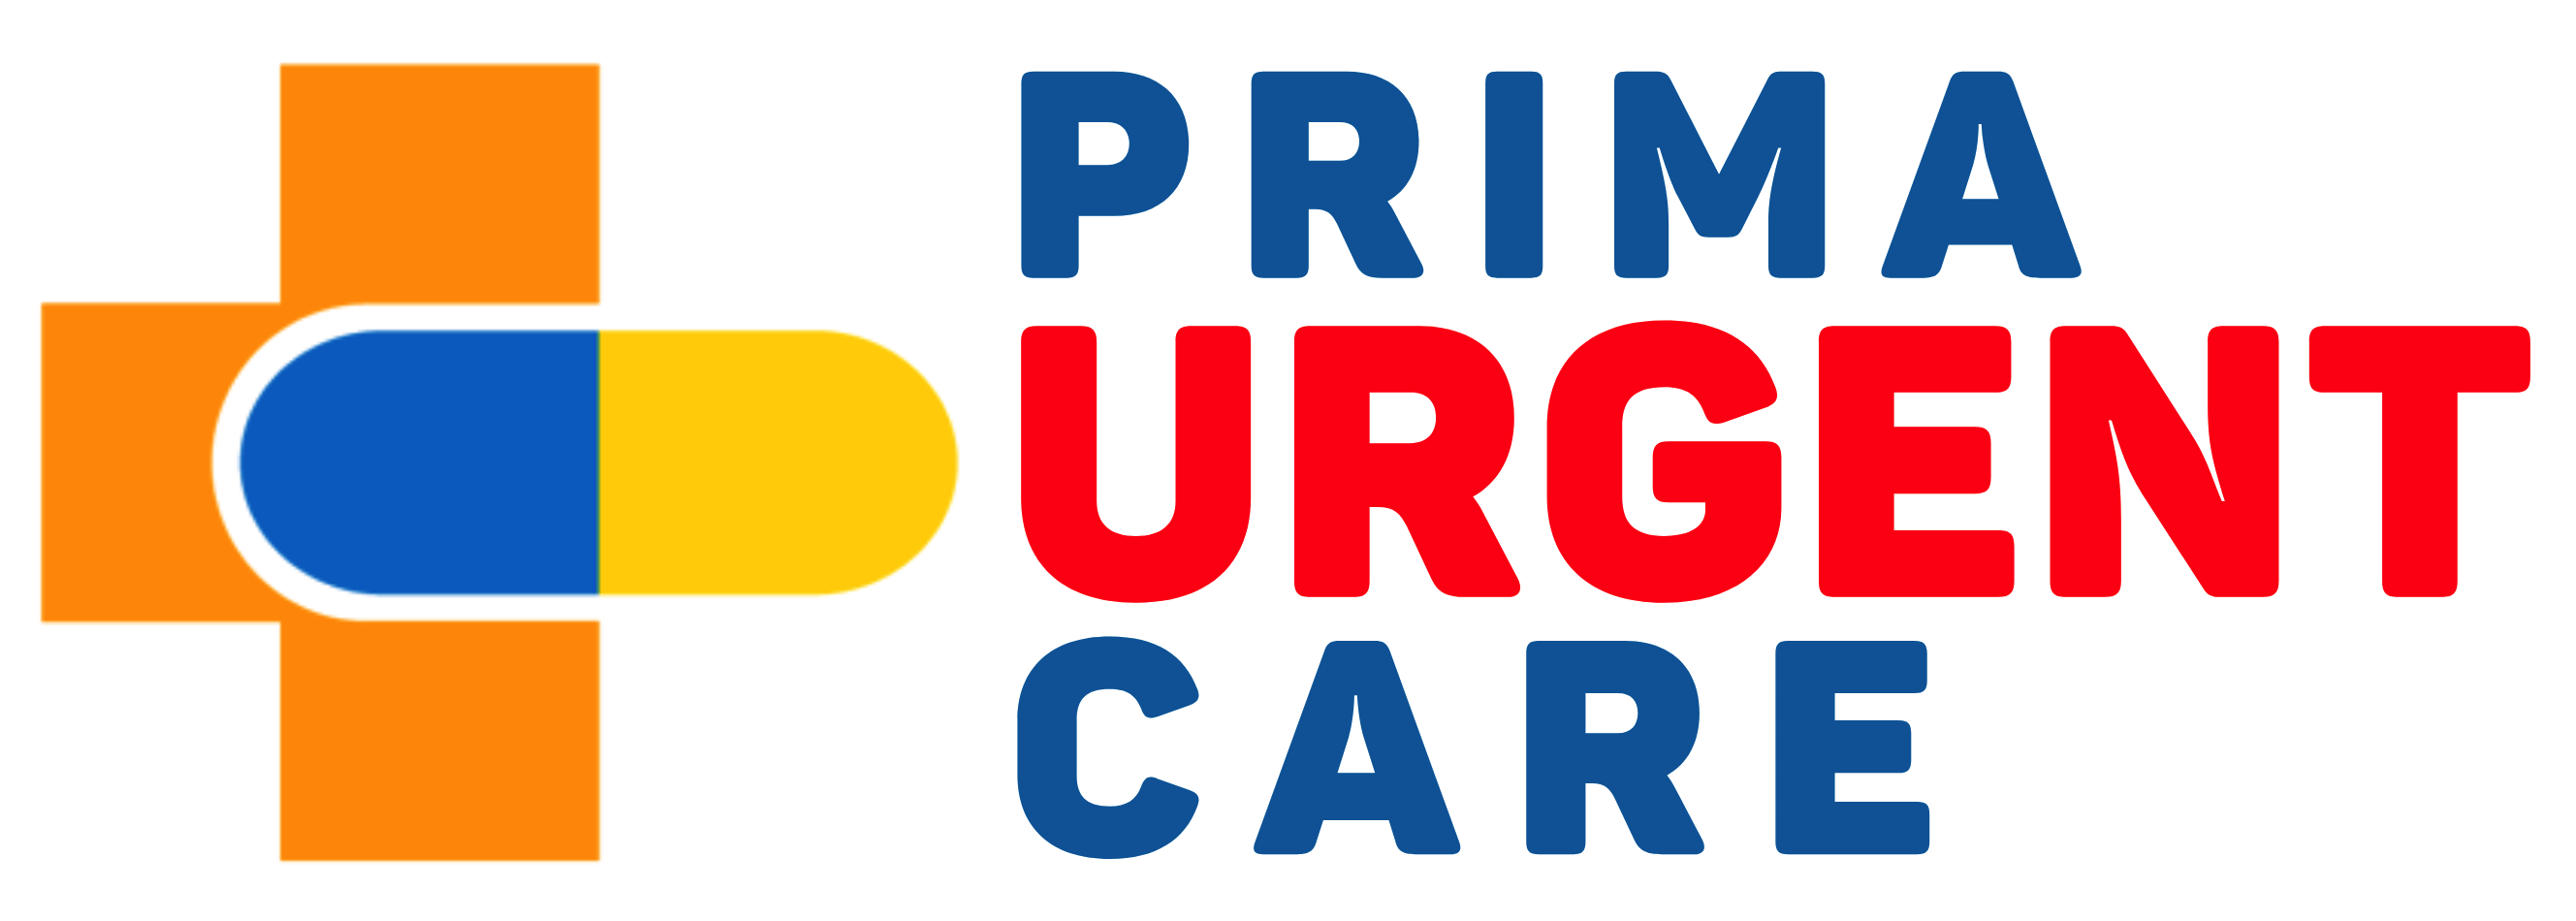 Prima Urgent Care - South Riding Logo